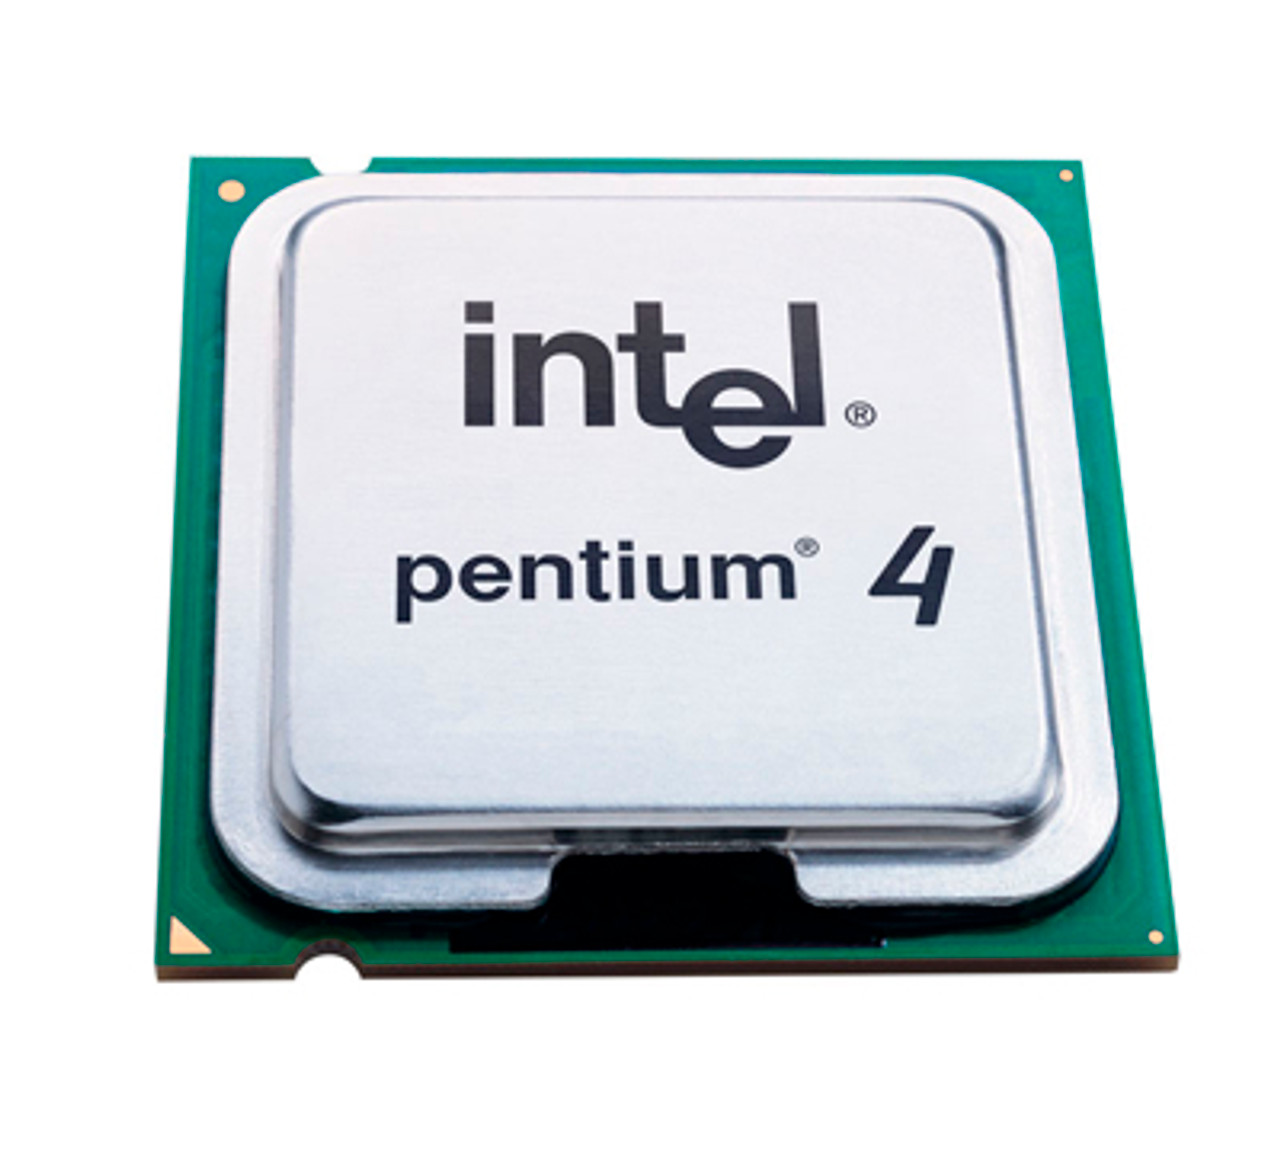 SL7PY - Intel Pentium 4 550J 3.40GHz 800MHz FSB 1MB L2 Cache Socket 775 Processor